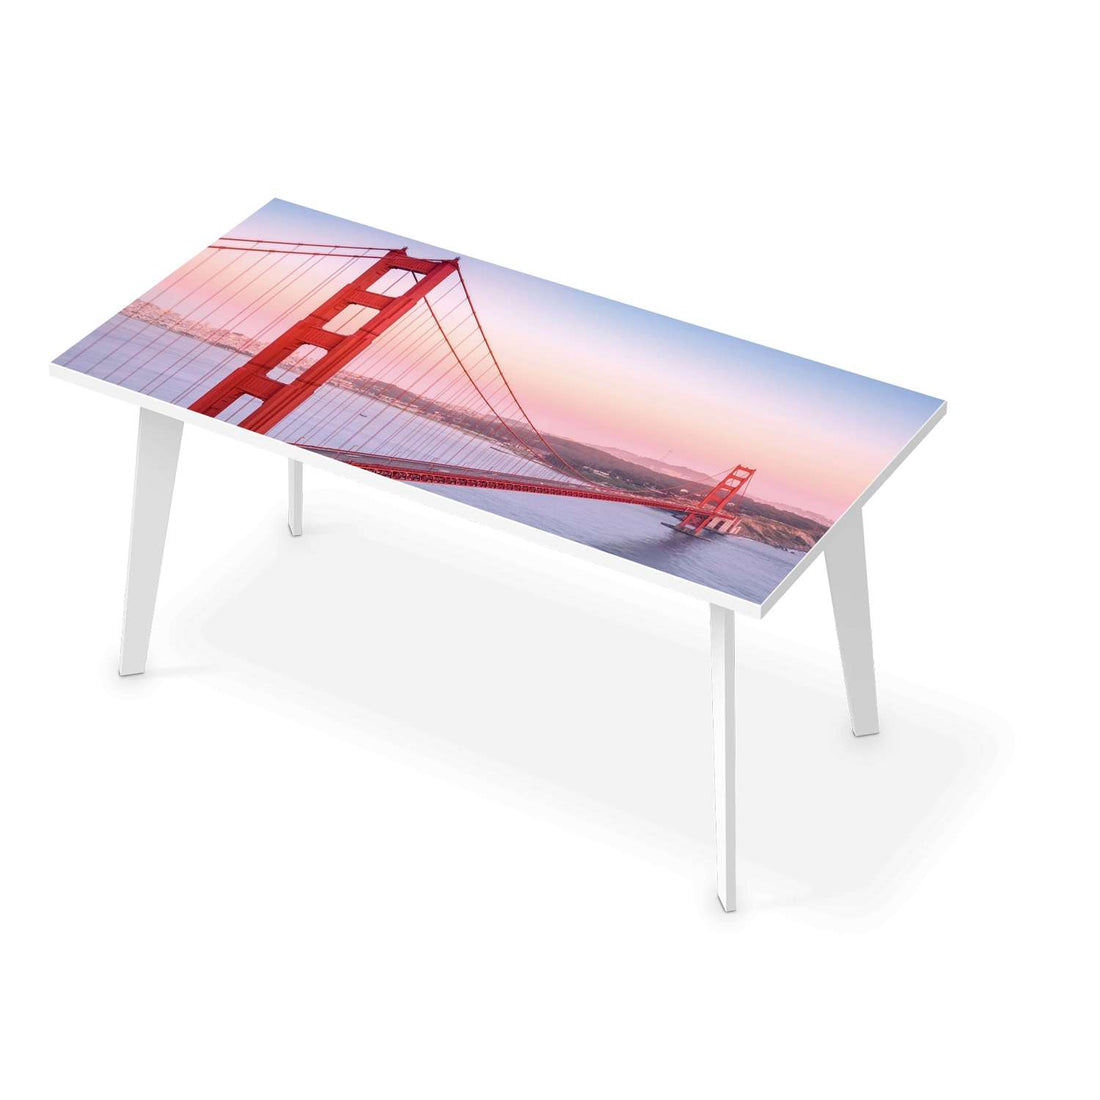 Tischfolie Golden Gate - Esszimmer Tisch 160x80 cm